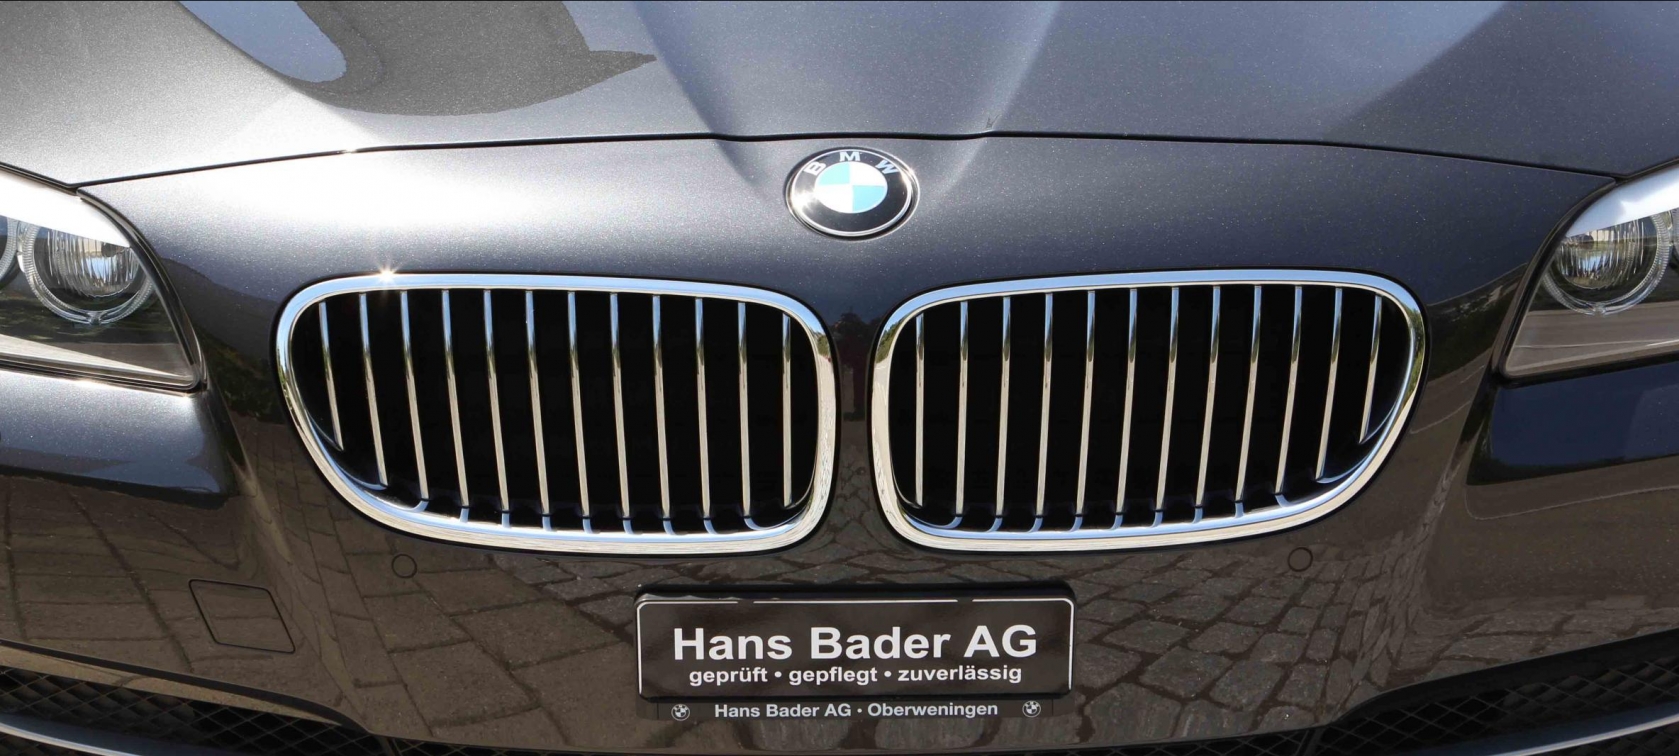 Hans Bader AG, Fahrzeugverkauf